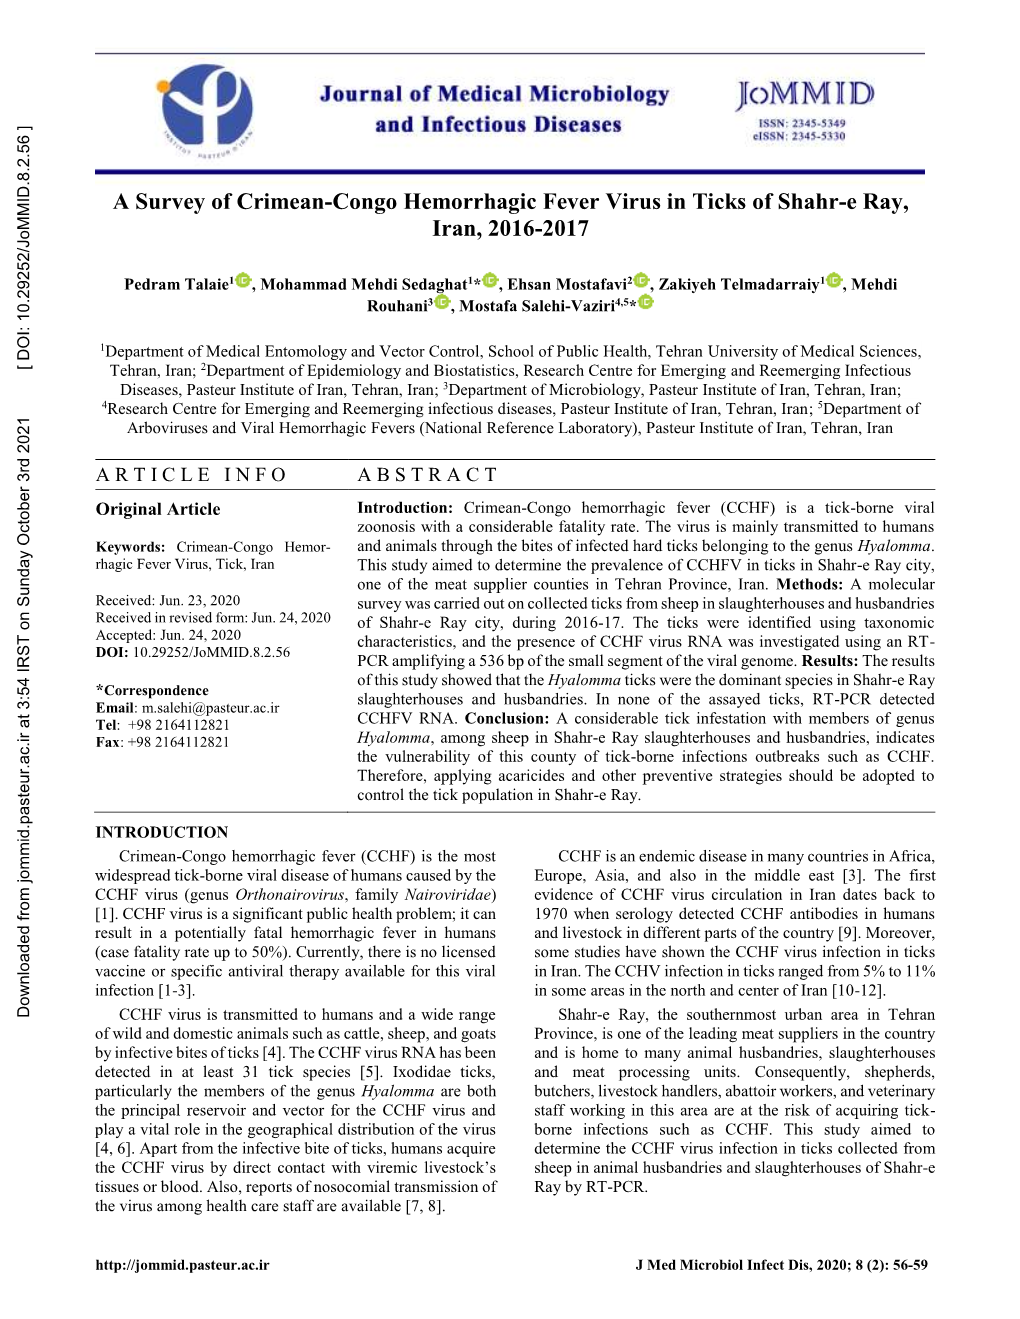 A Survey of Crimean-Congo Hemorrhagic Fever Virus in Ticks of Shahr-E Ray, Iran, 2016-2017